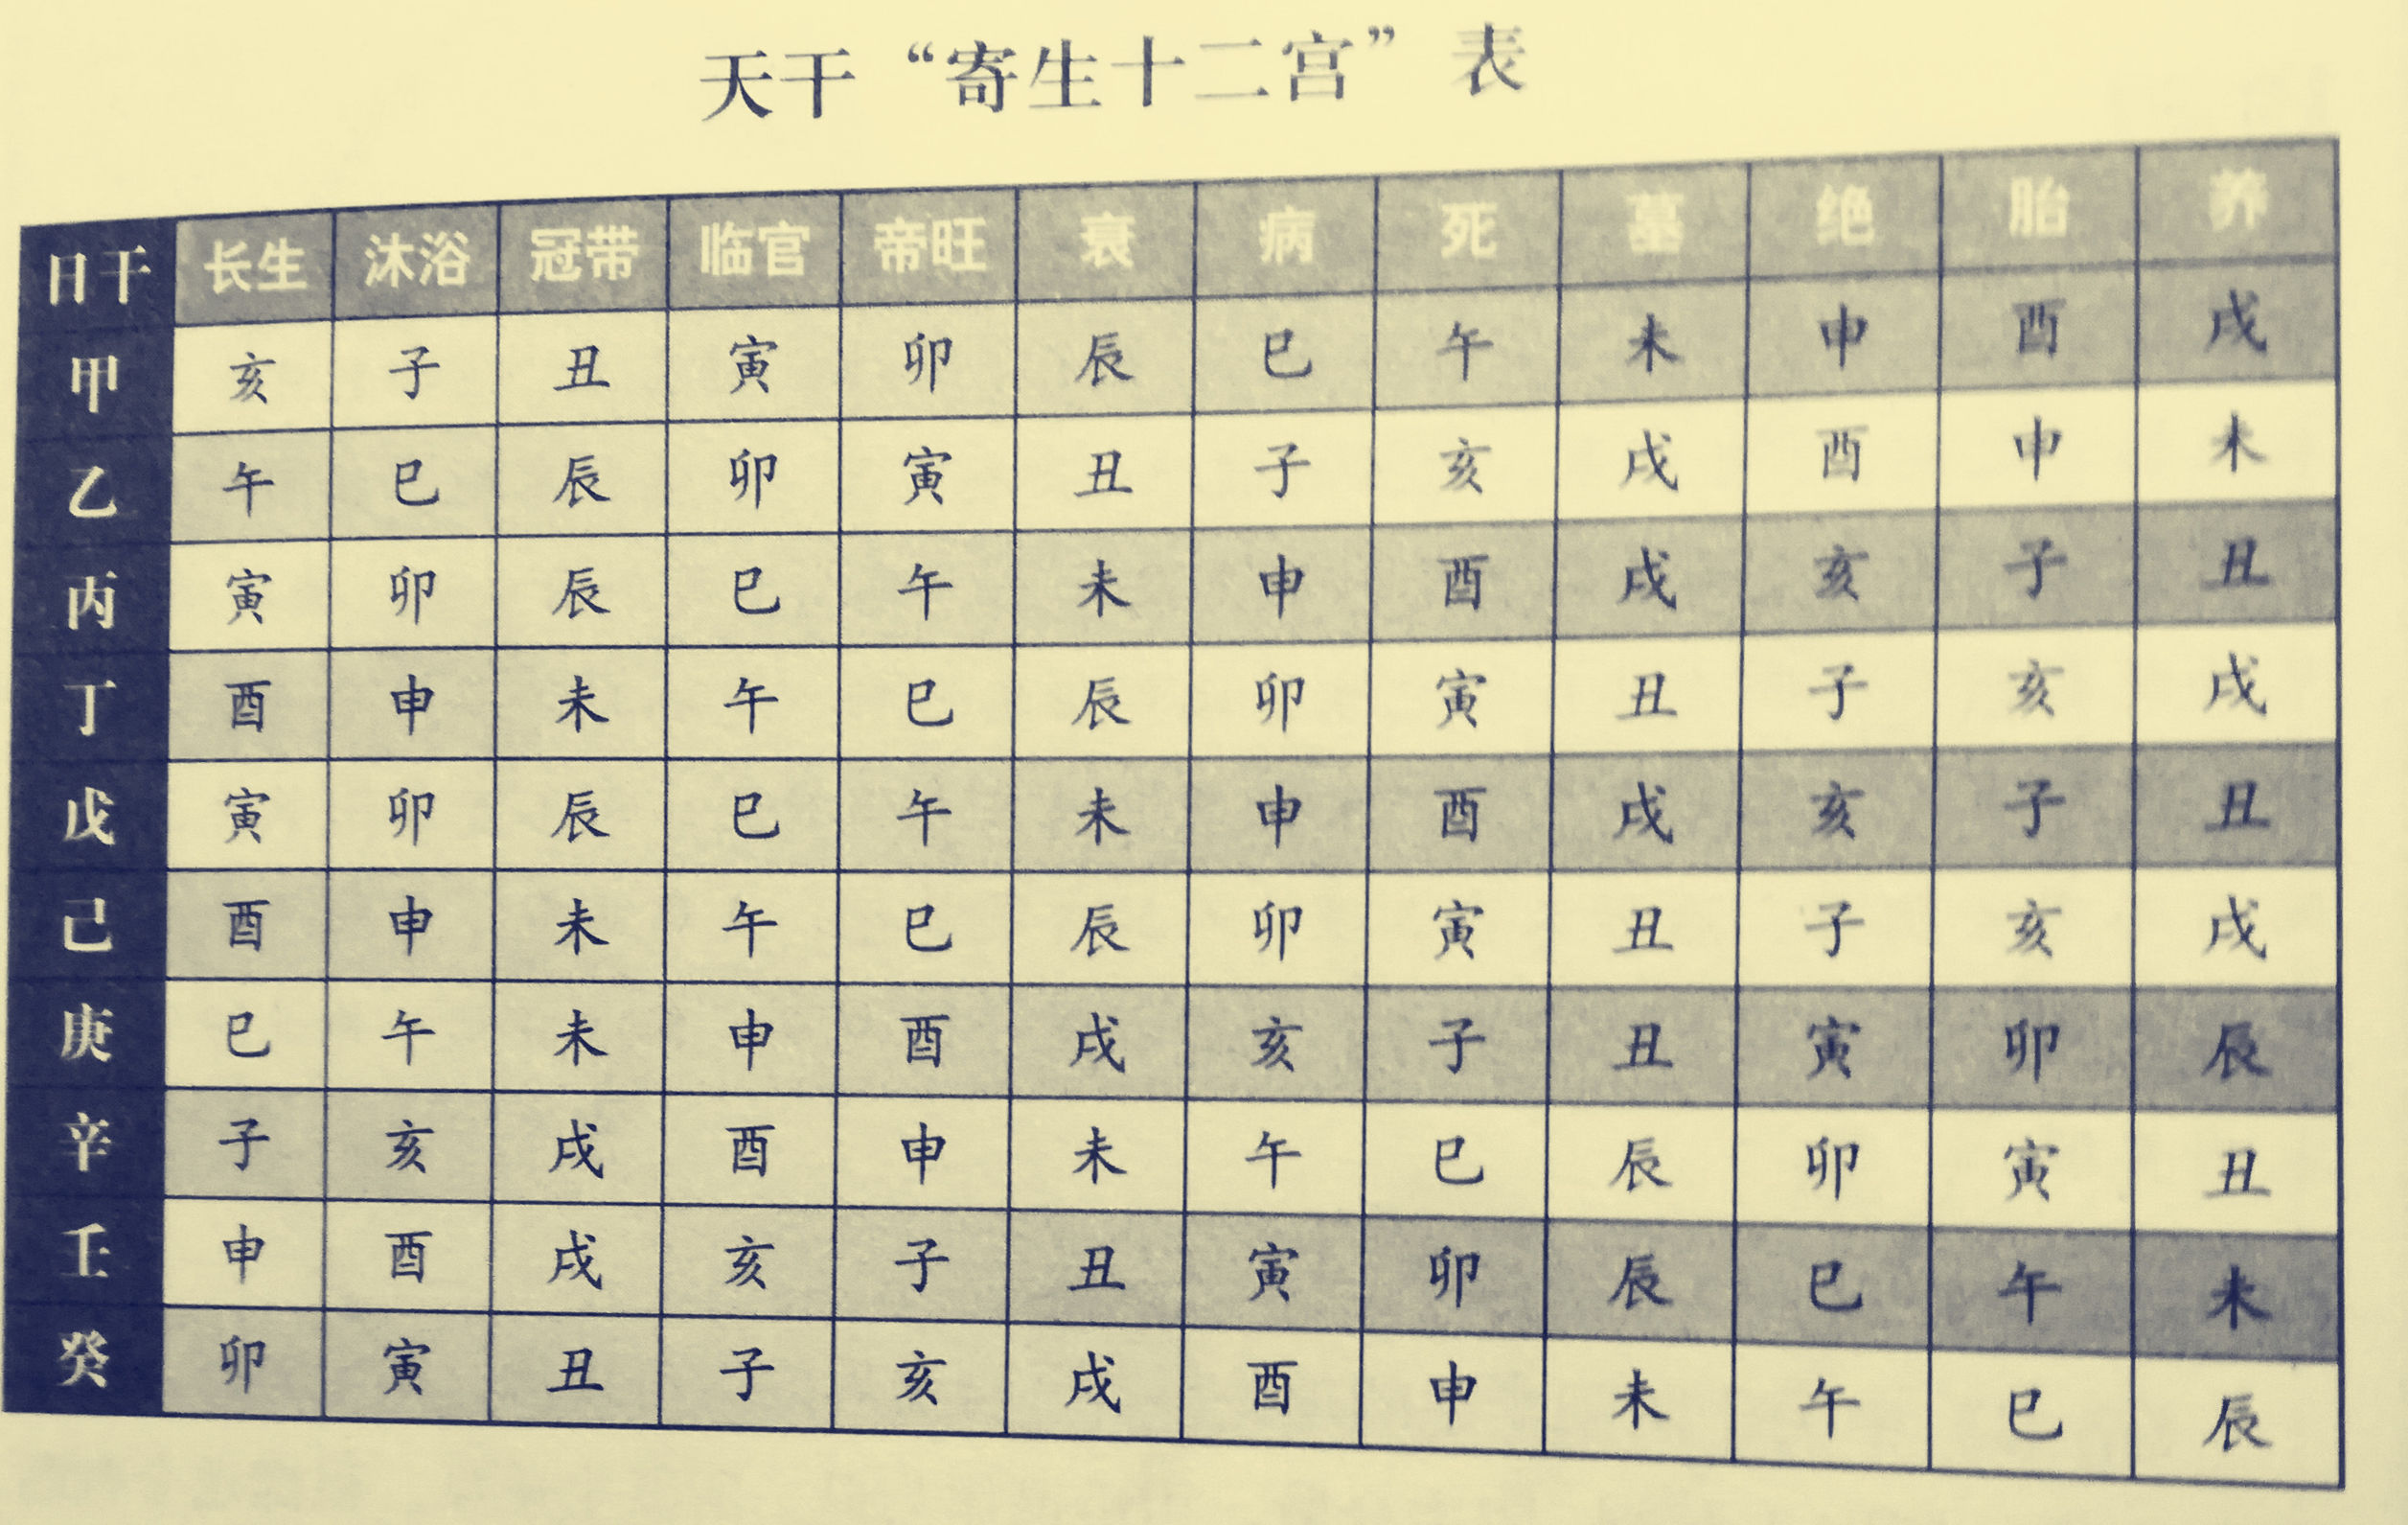 国标「片假名汉字对照表」解读与评价 - 知乎